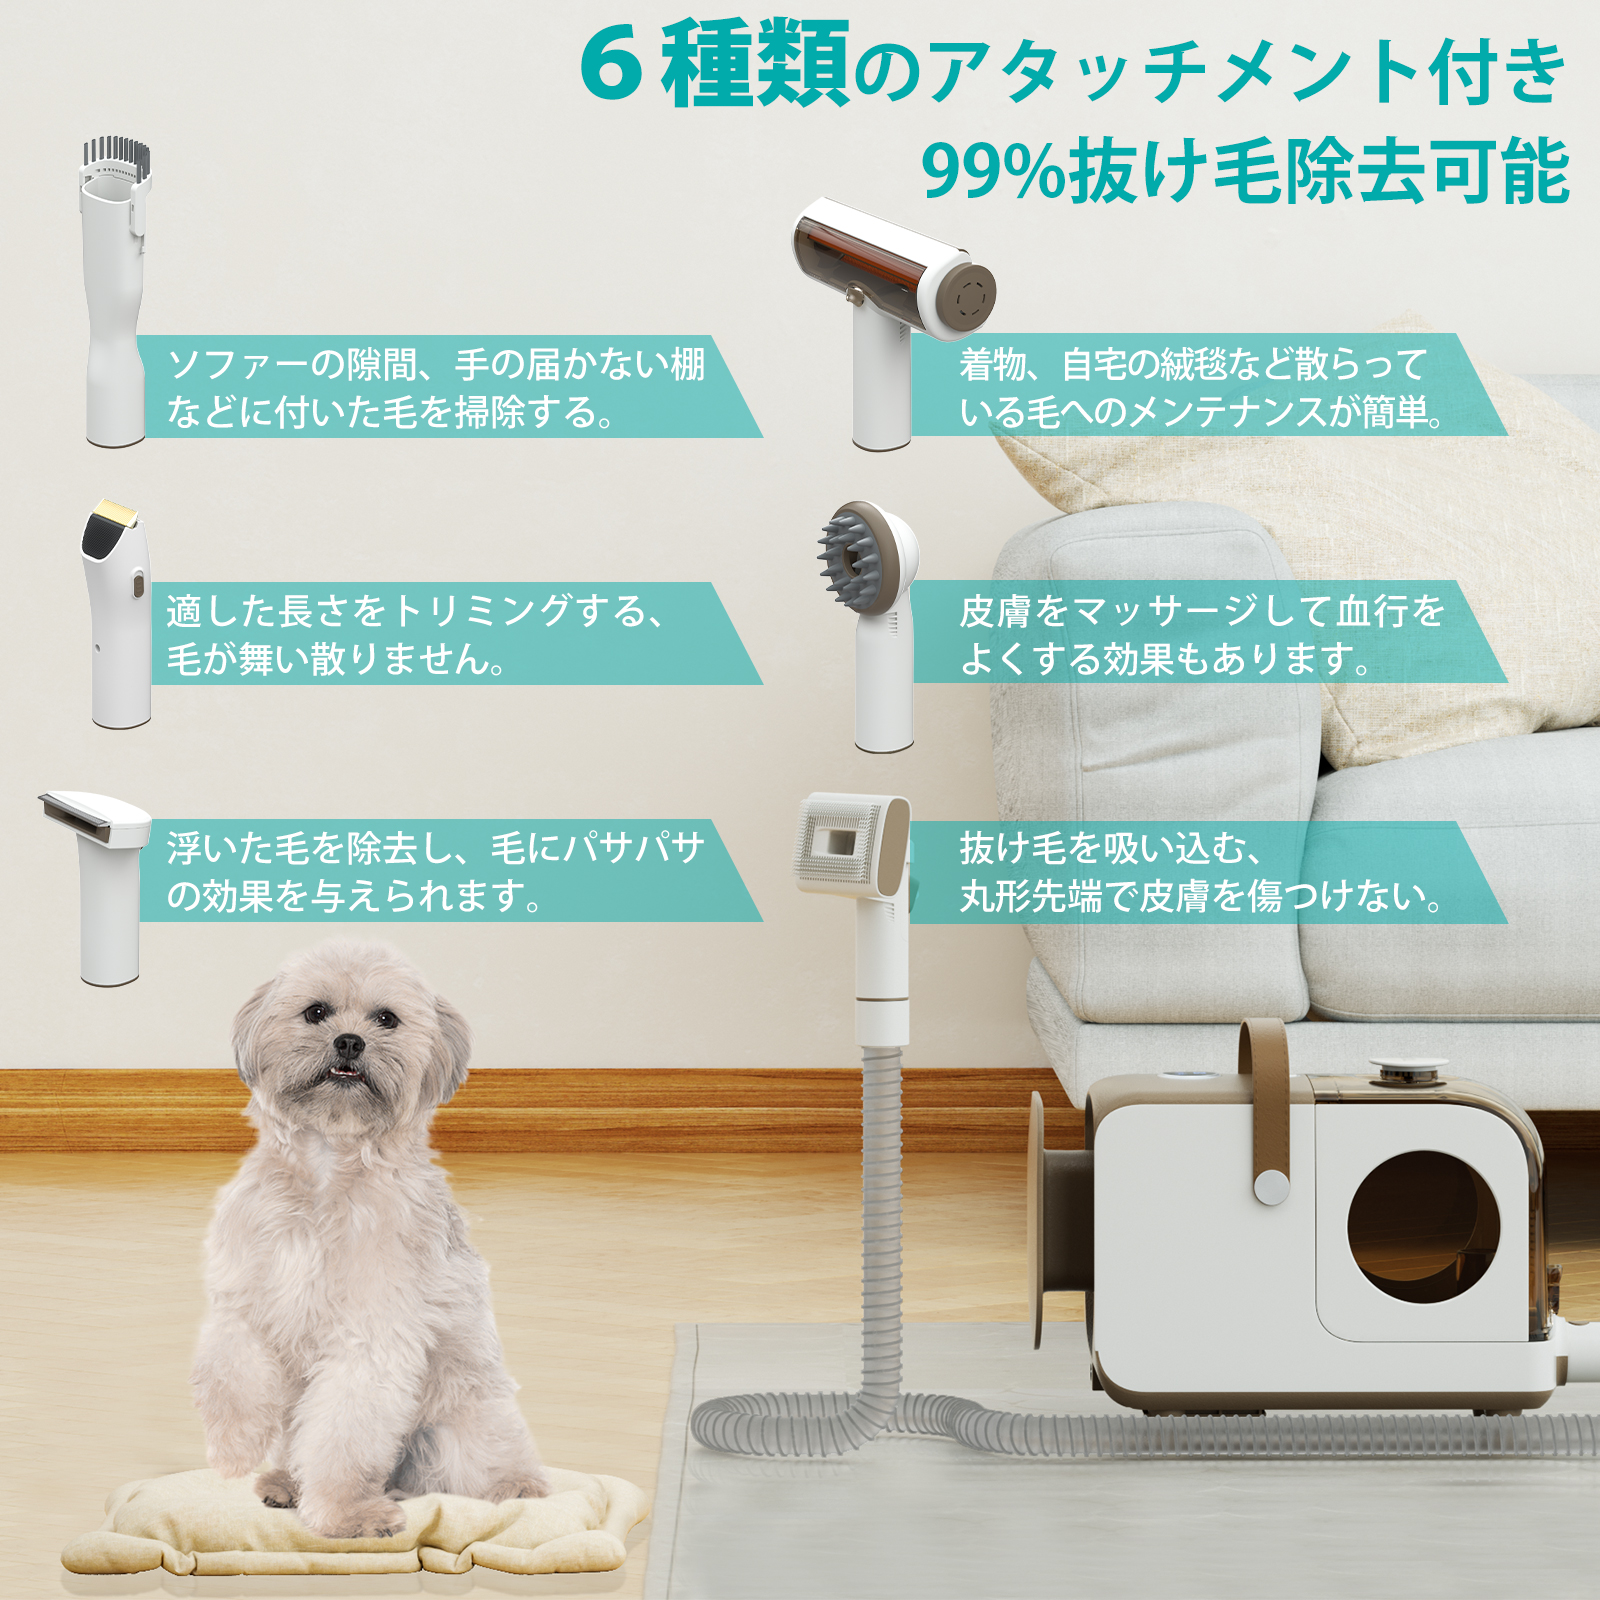 ペット バリカン クリーナー 掃除機 業務用 犬用 猫用 グルーミングセット ペット美容器 電動クリーナー ペット用グルーミングクリーナー  吸引力調整可能 1台6役